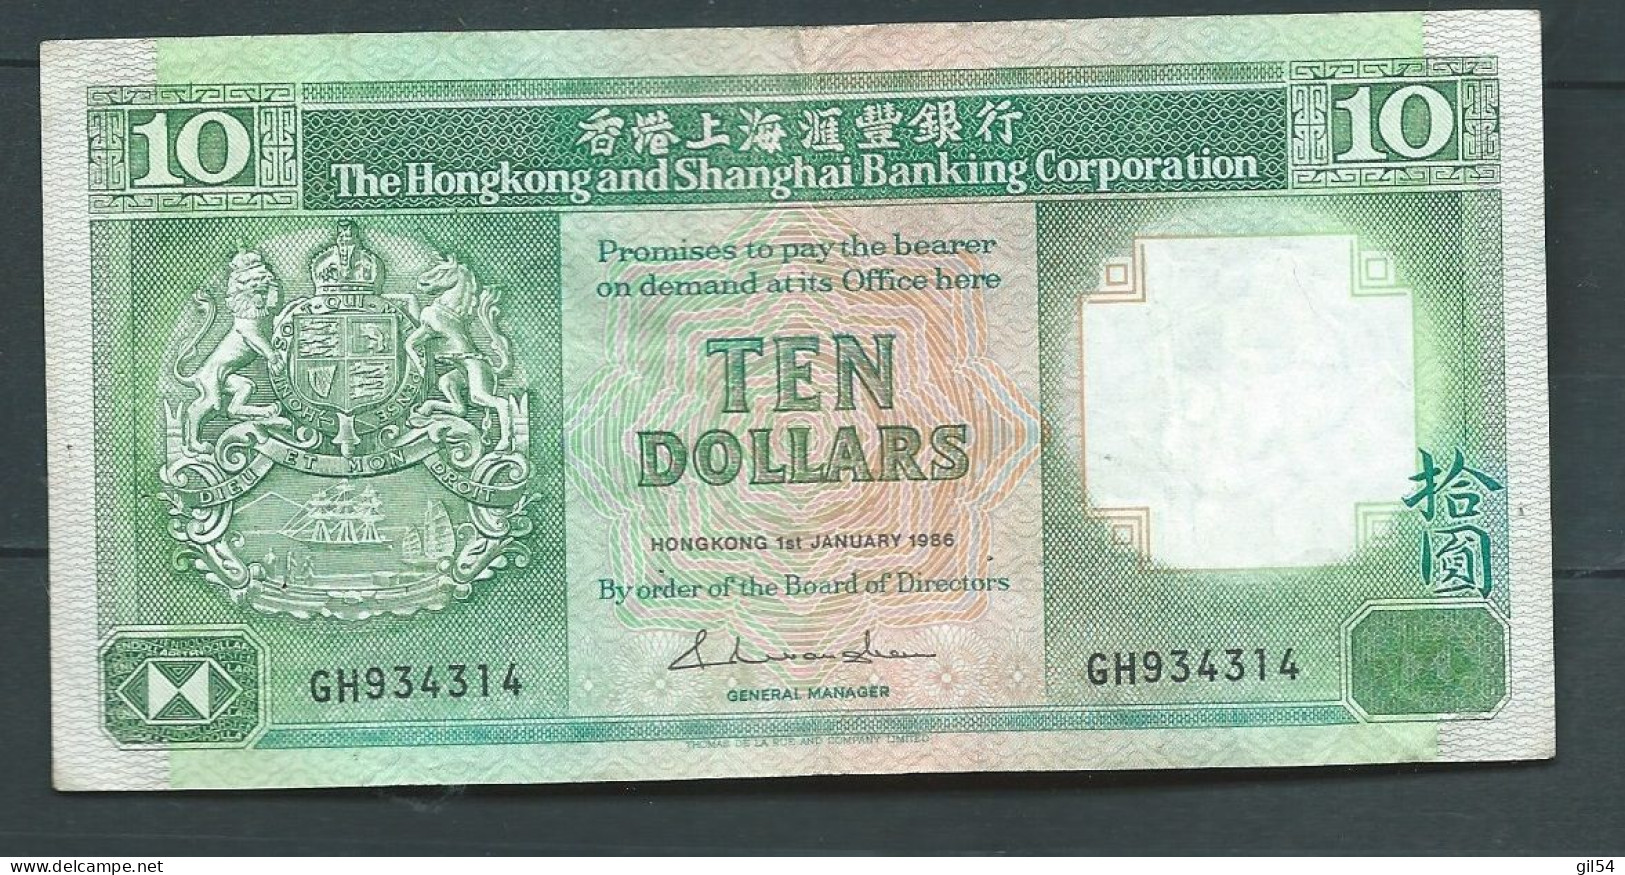 HONG KONG 10 DOLLARS 1986  -  GH934314  Laura 14103 - Hongkong